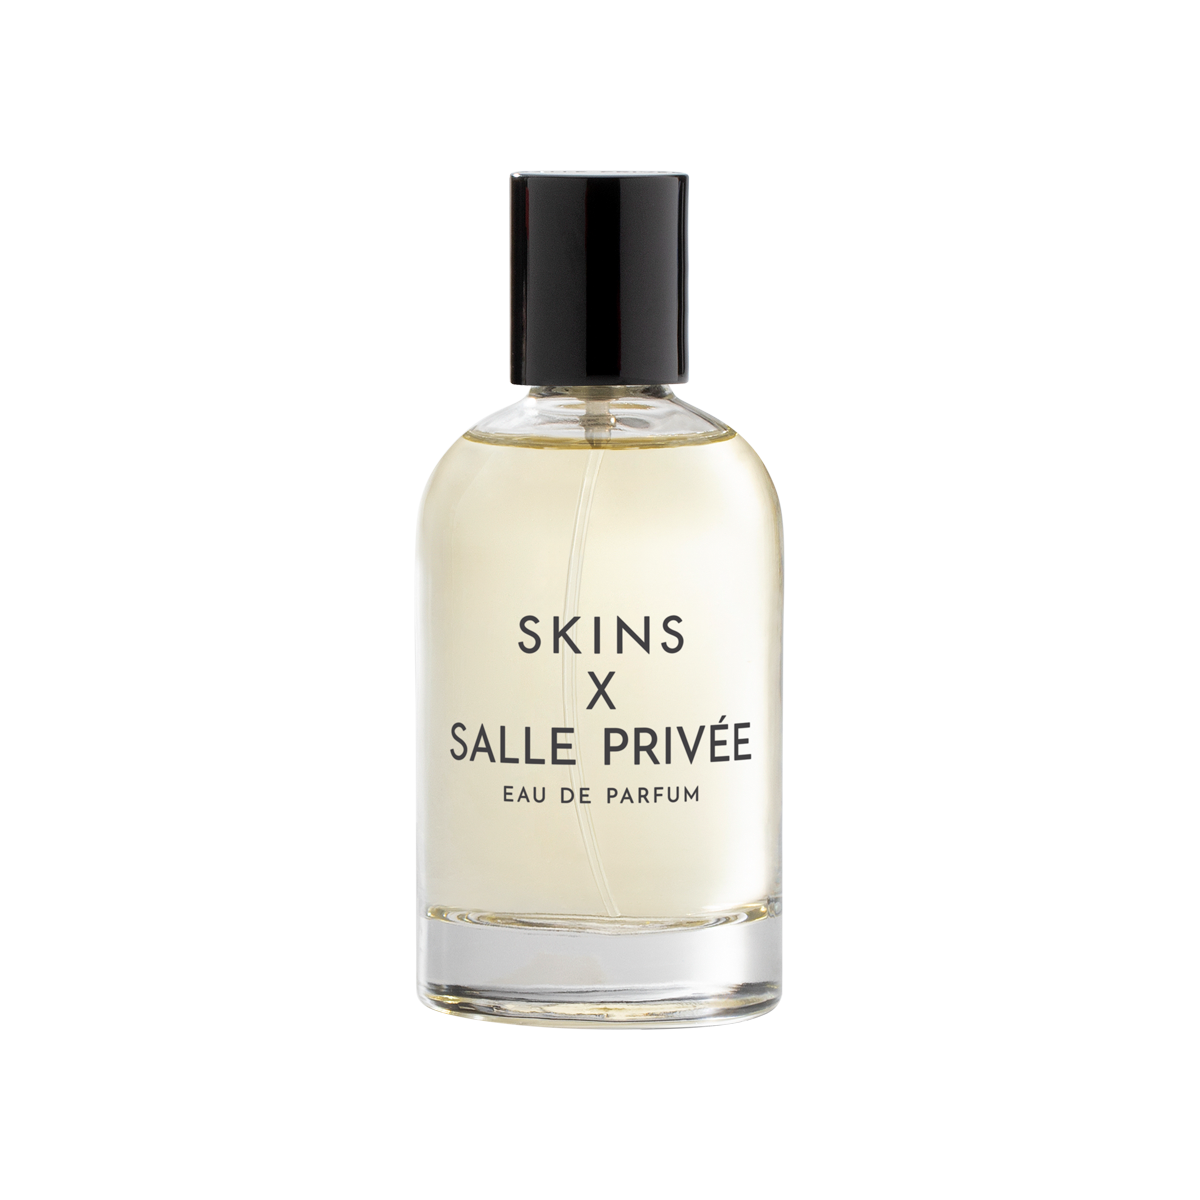 SALLE PRIVEE - SKINS x SALLE PRIVÉE Eau de Parfum